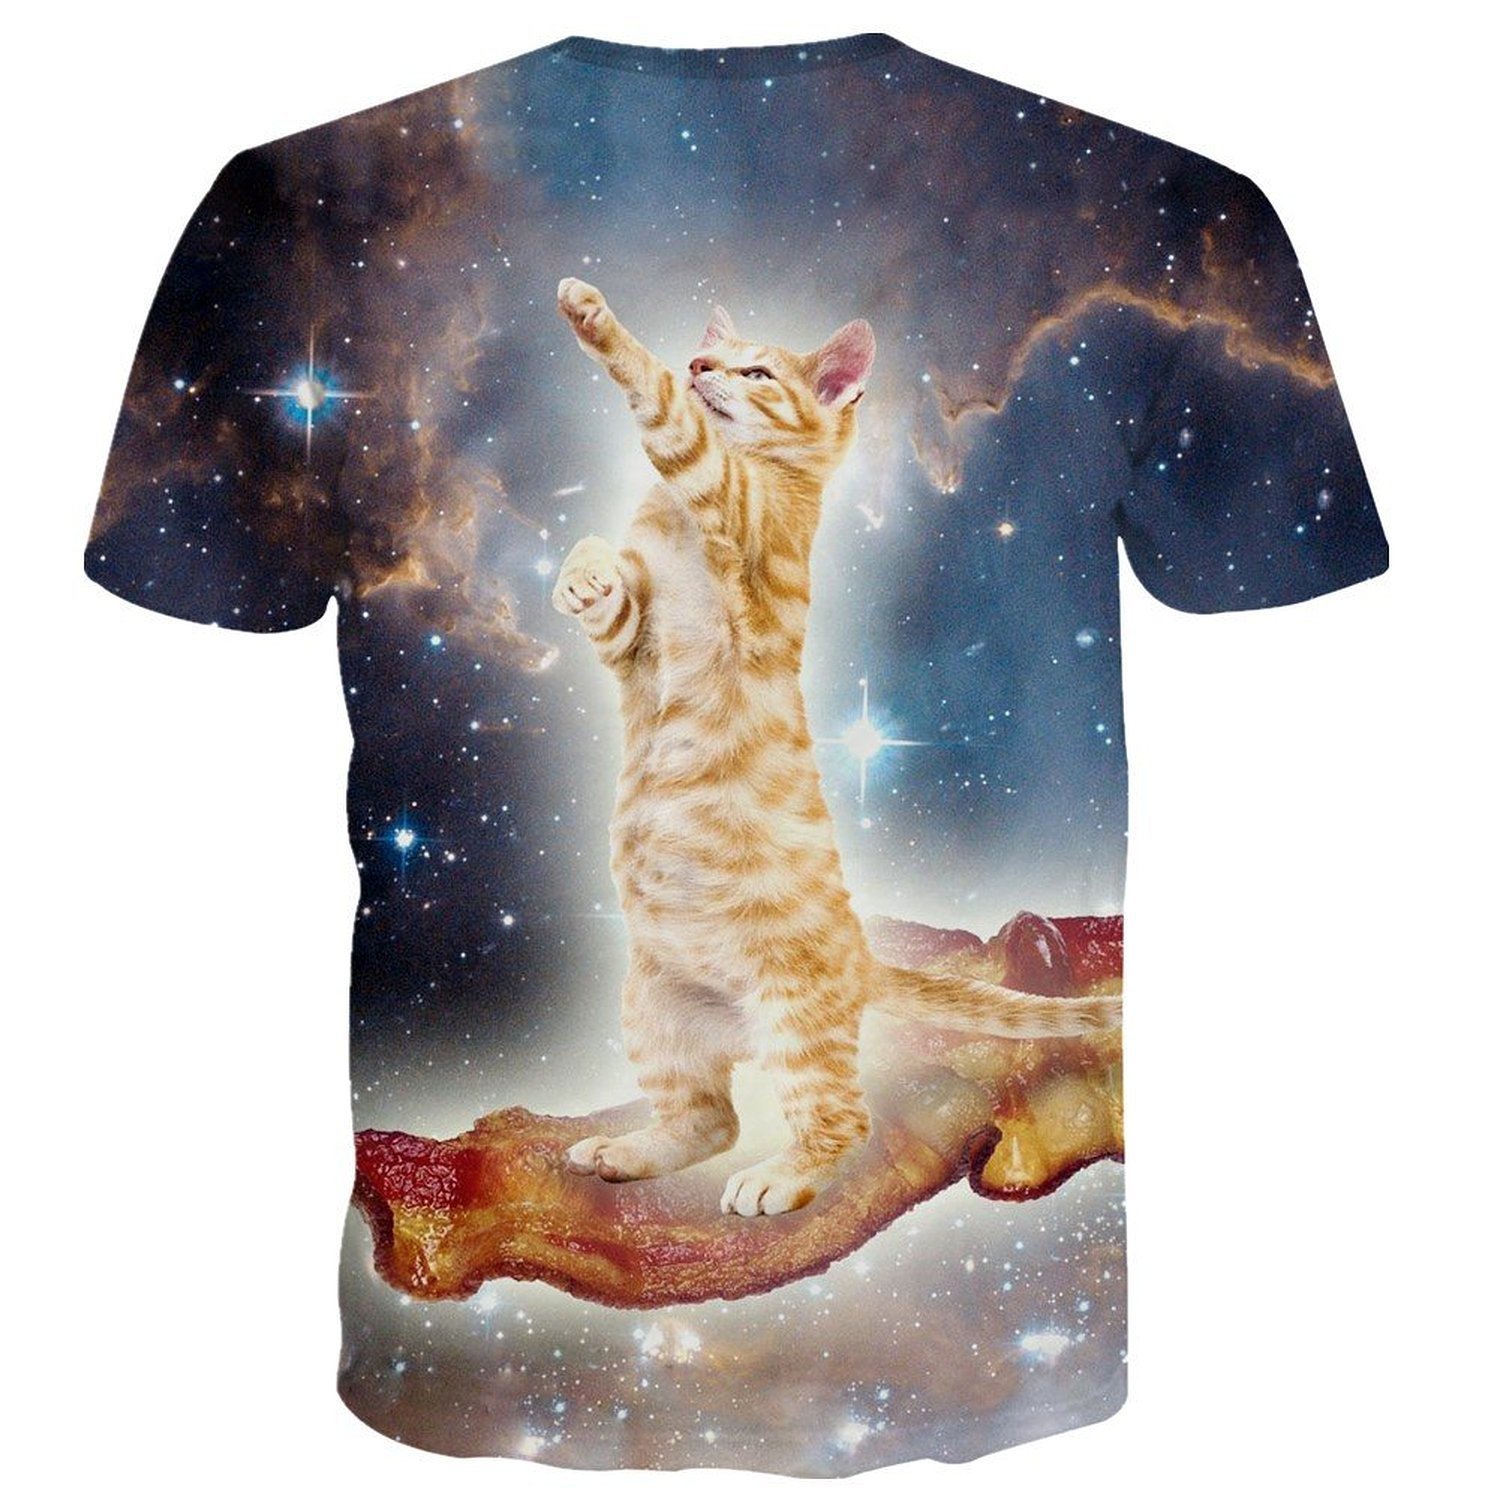 絶対にウケるtシャツを紹介 宇宙に浮かぶベーコンに乗る猫